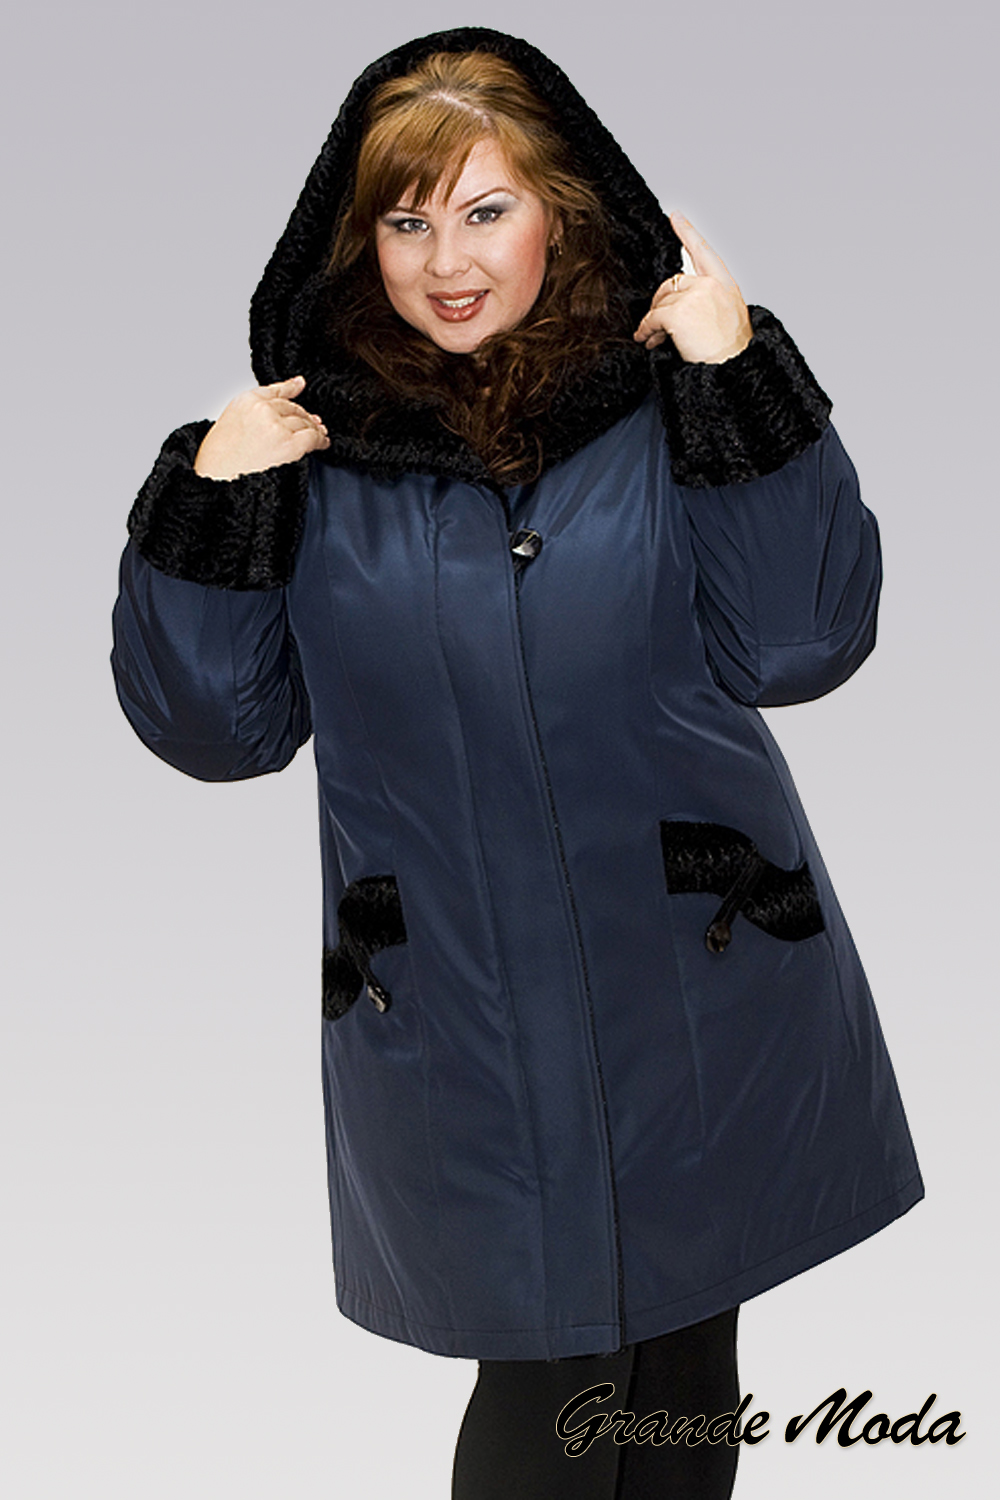 Пальто женское 56 размер купить. Зимняя куртка женская валберис 60 размер. Куртки женские зимние 64 размер на валберис. Зимняя куртка женская валберис 62 размер. Куртки для полных женщин.